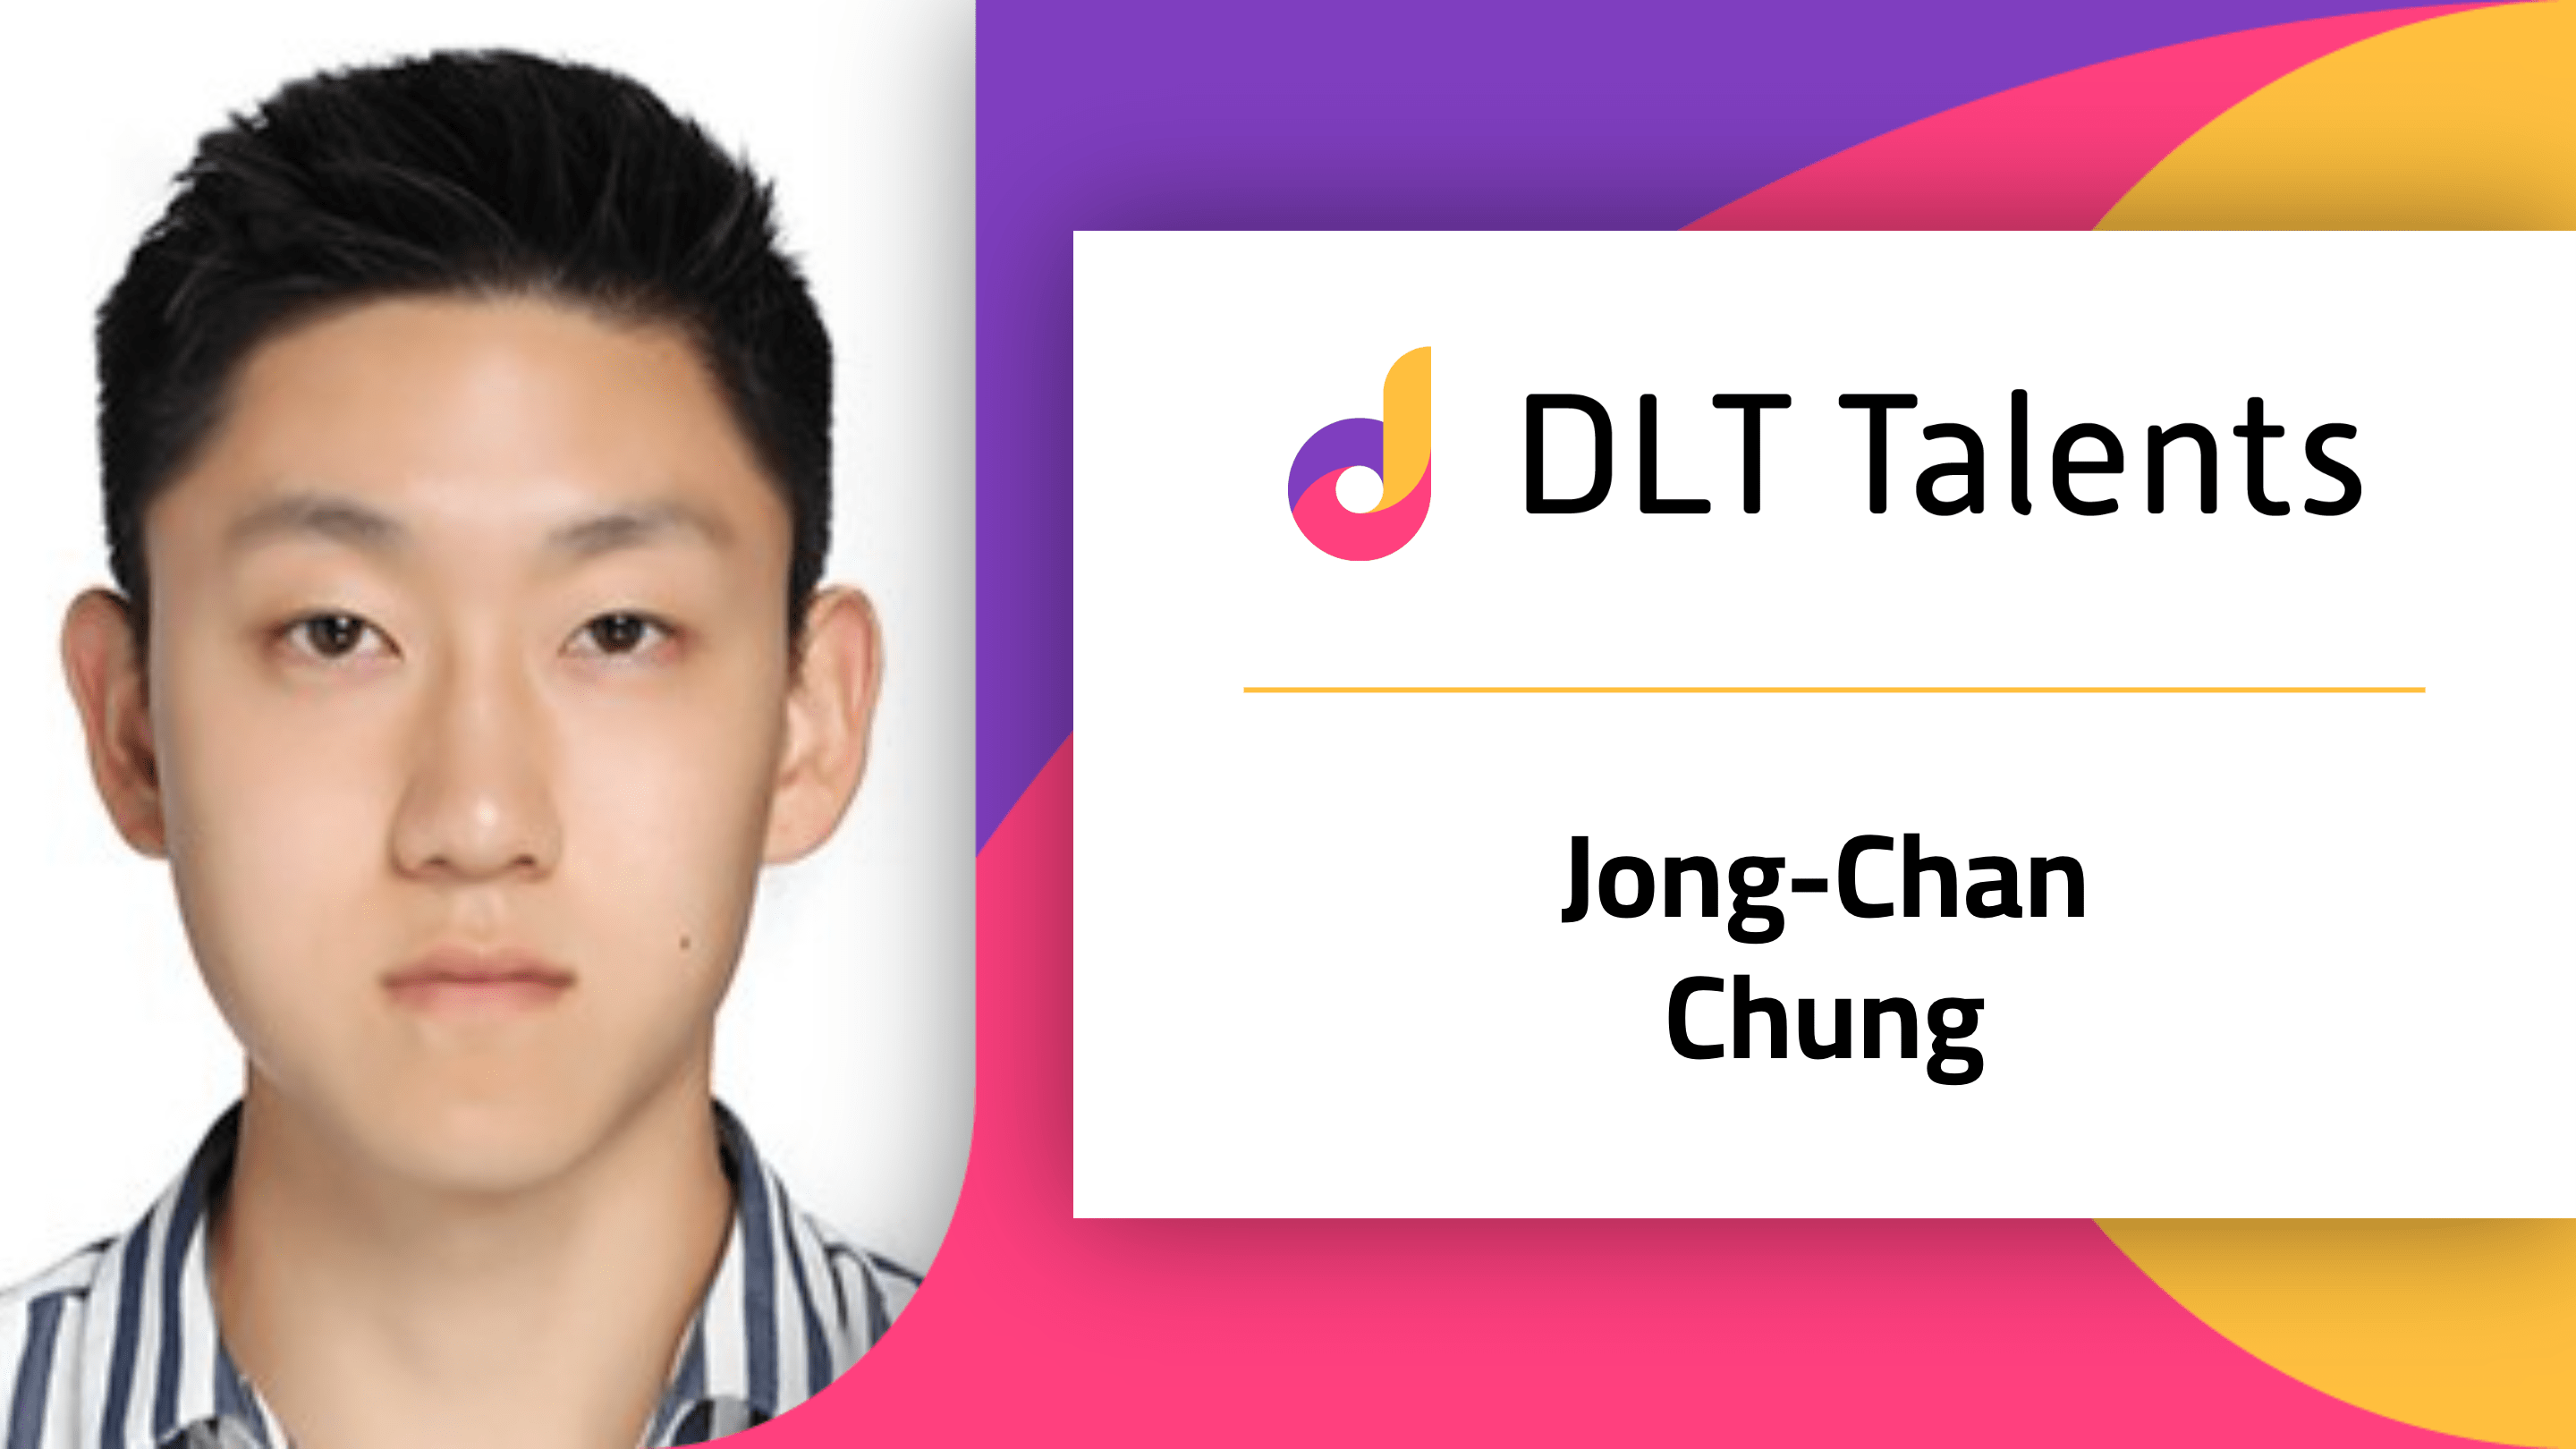 DLT Talents Mentor – Jong-Chan Chung